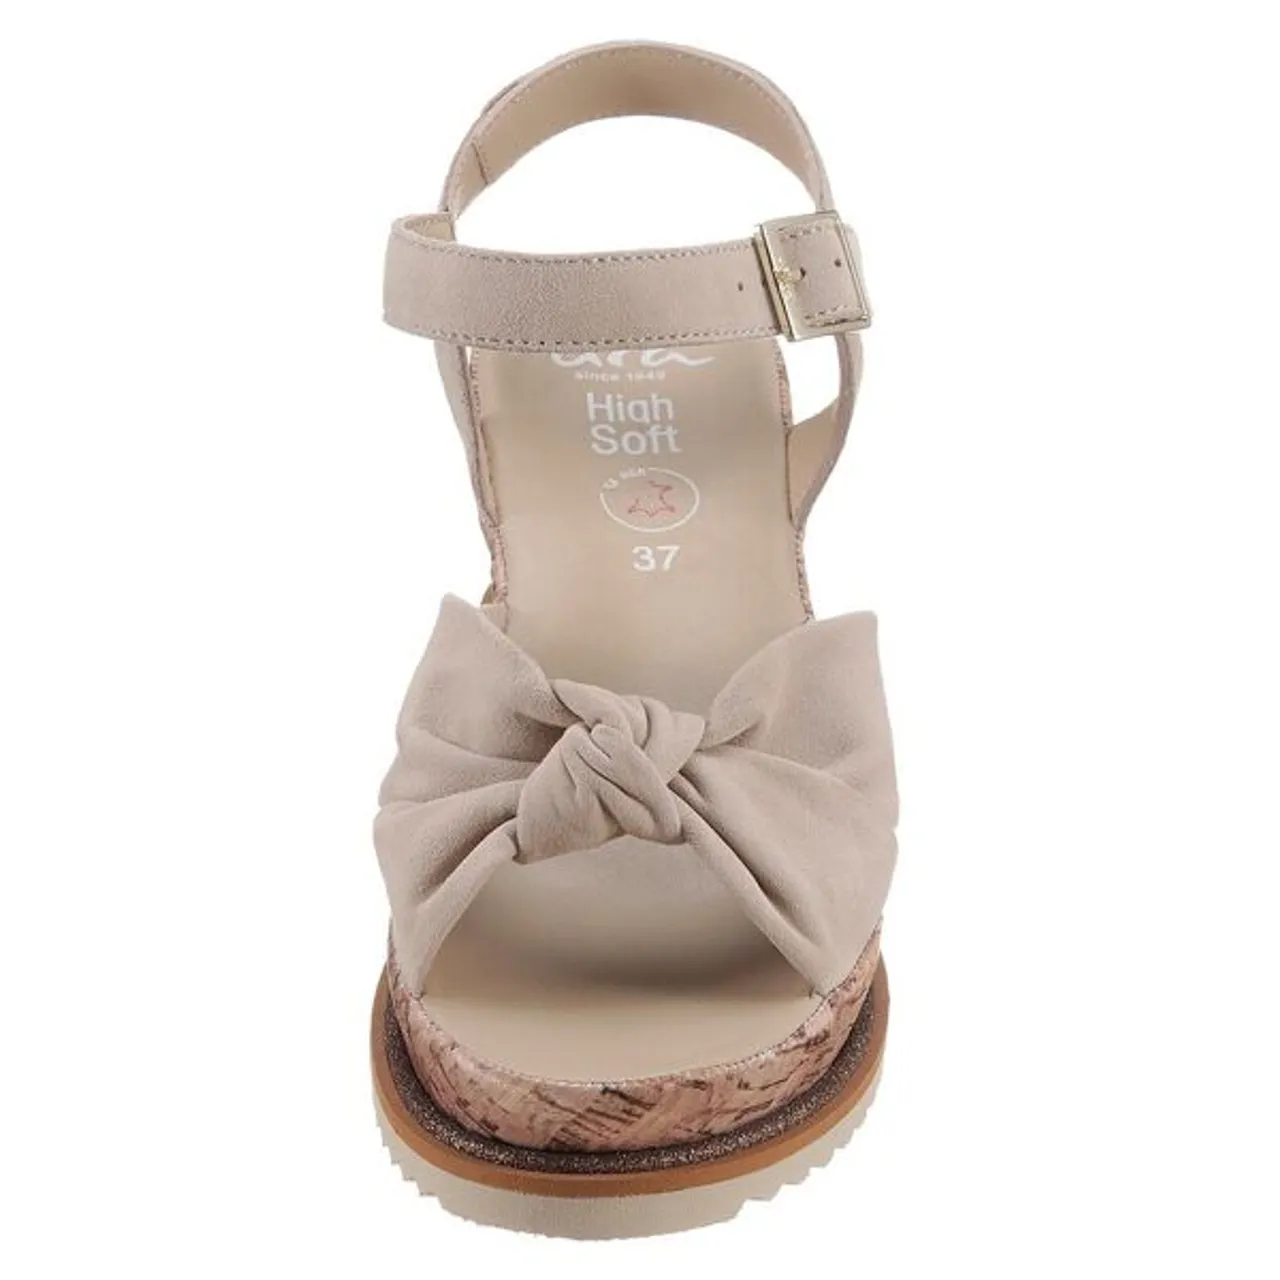 Keilsandalette ARA "PARMA" Gr. 38, beige (sand) Damen Schuhe Sandaletten